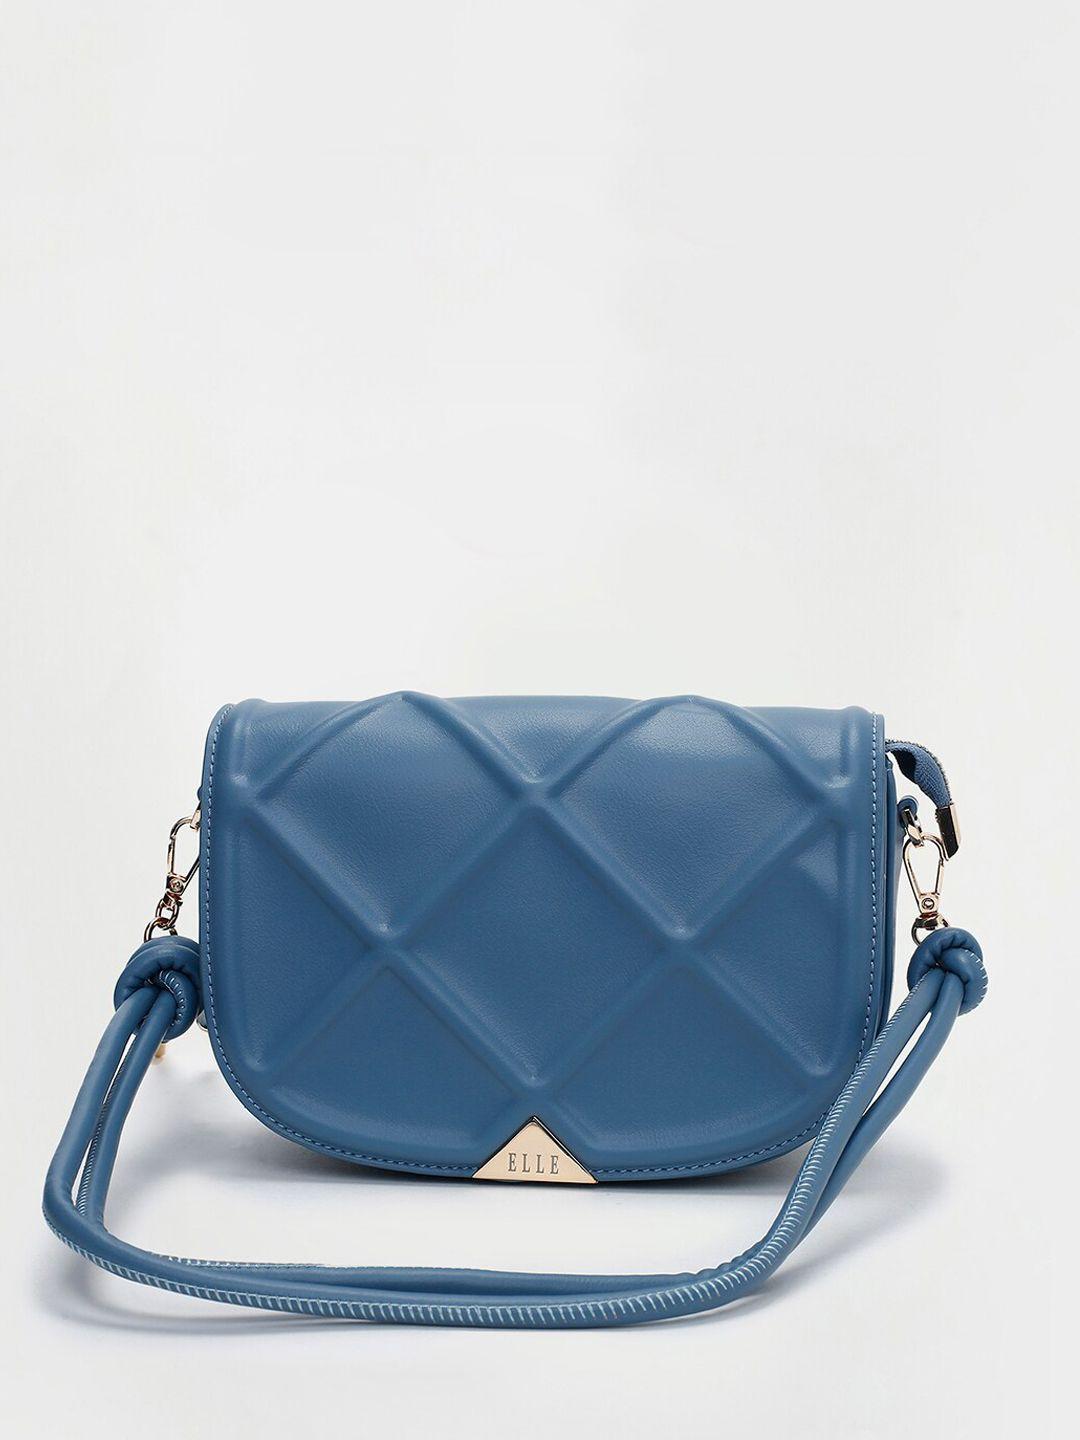 elle blue textured structured sling bag